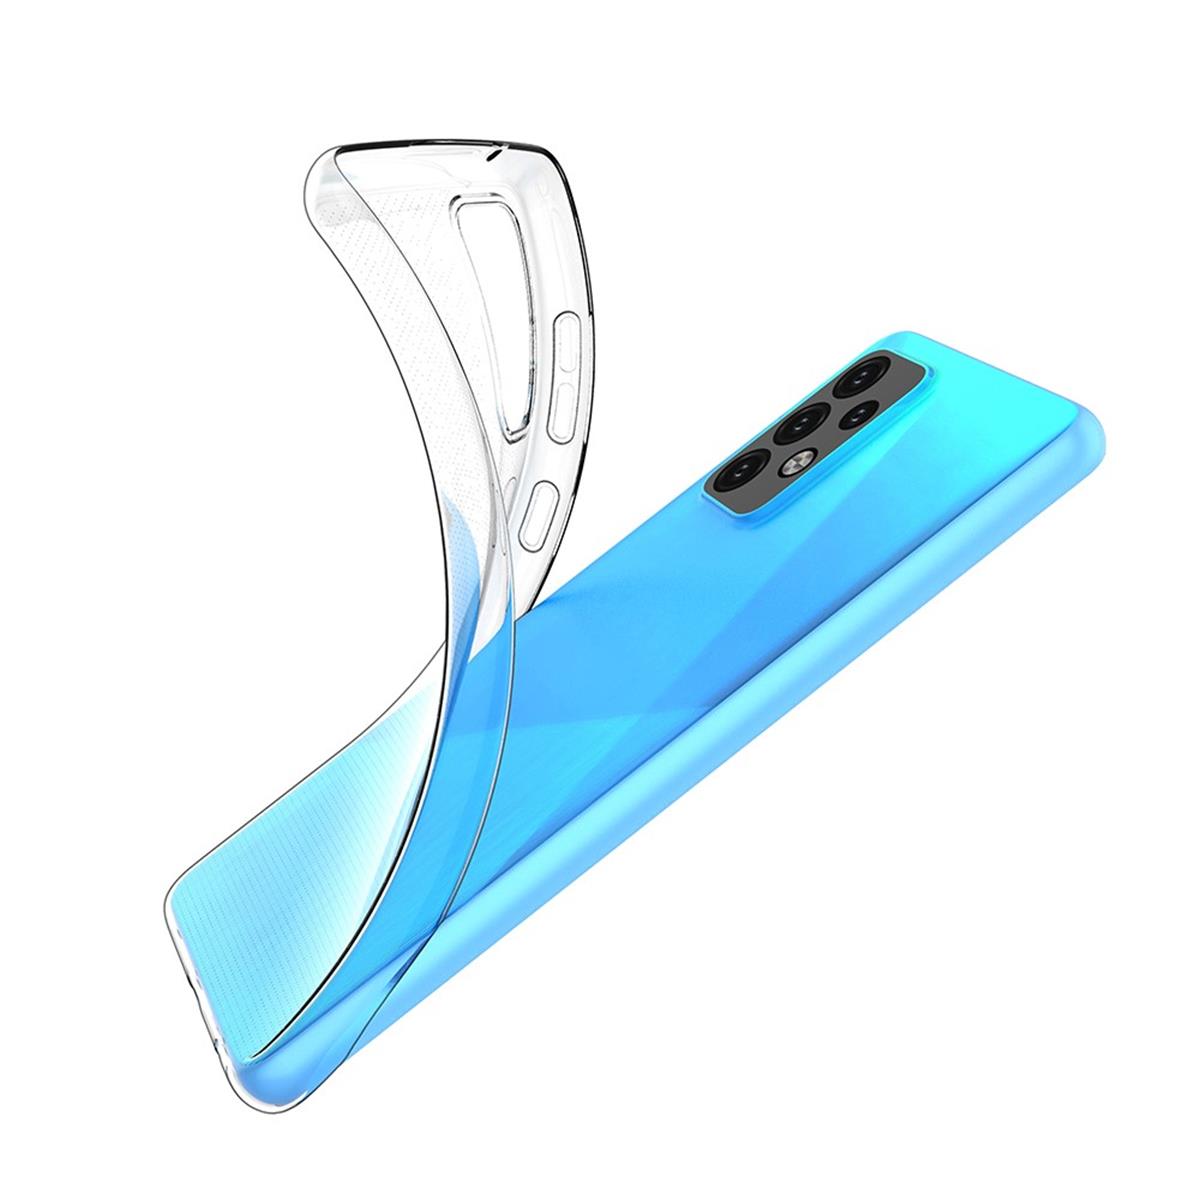 Hülle für Samsung Galaxy A52/A52 5G/A52s 5G Handyhülle Silikon Cover Case klar